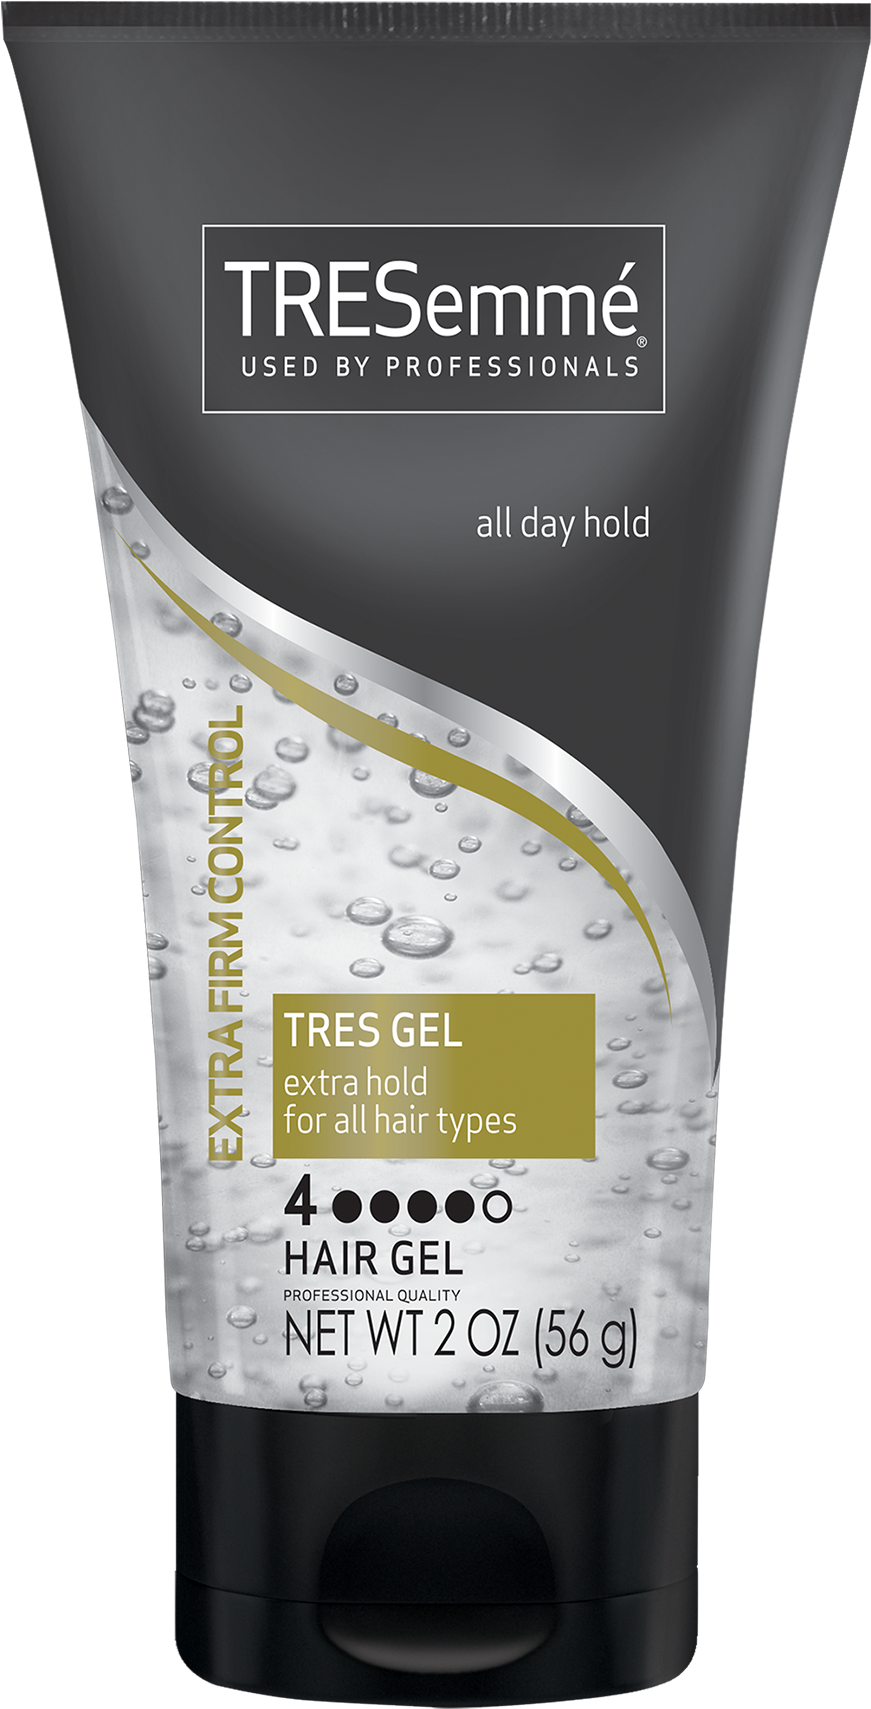 Hair Gel Png Pluspng - Tresemme Hair Gel (2048x2048), Png Download